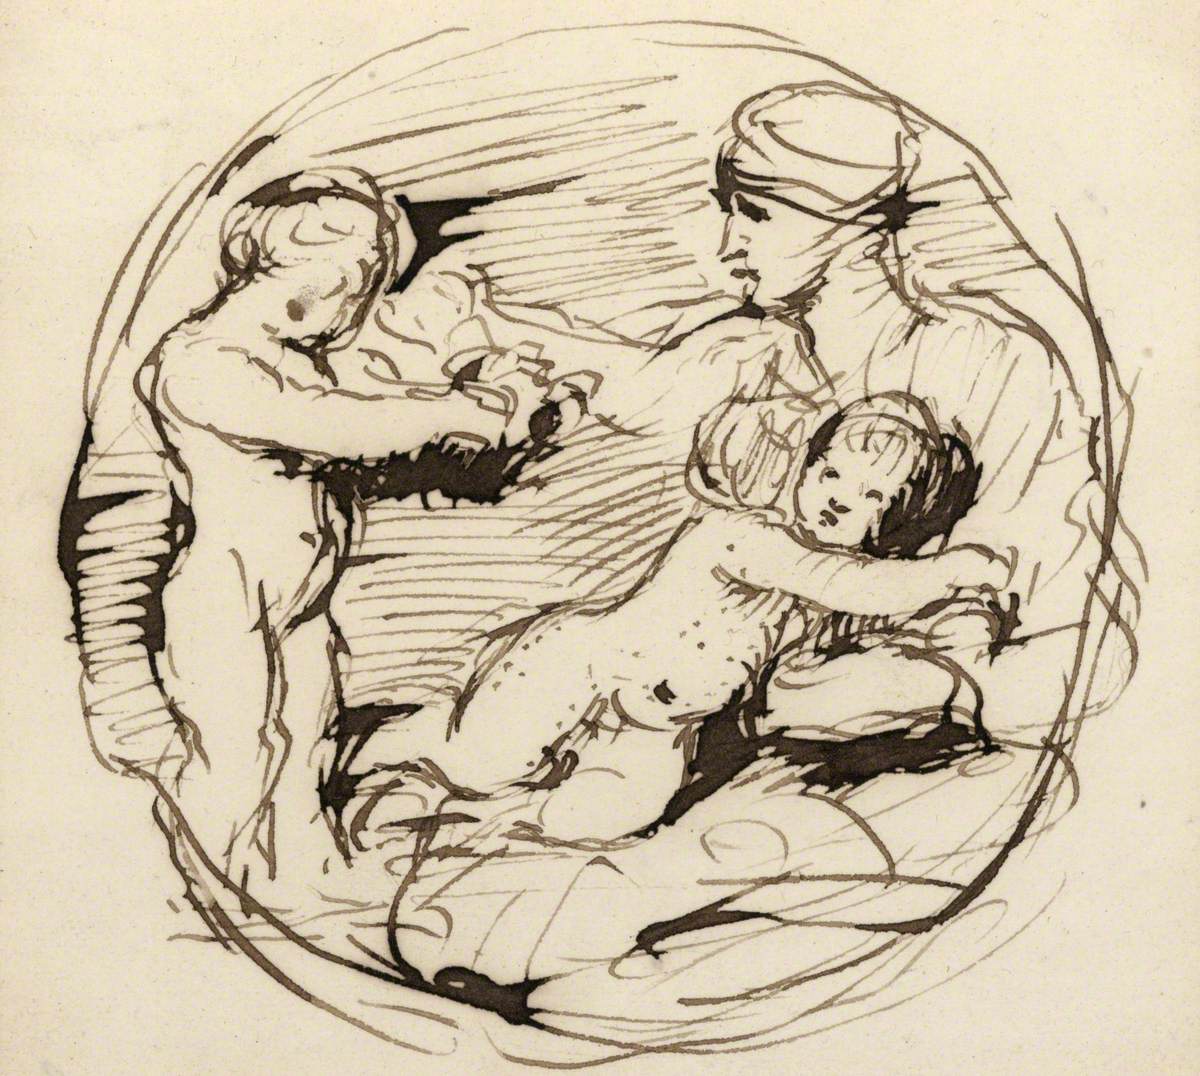 Sketch of Michelangelo's Taddei Tondo